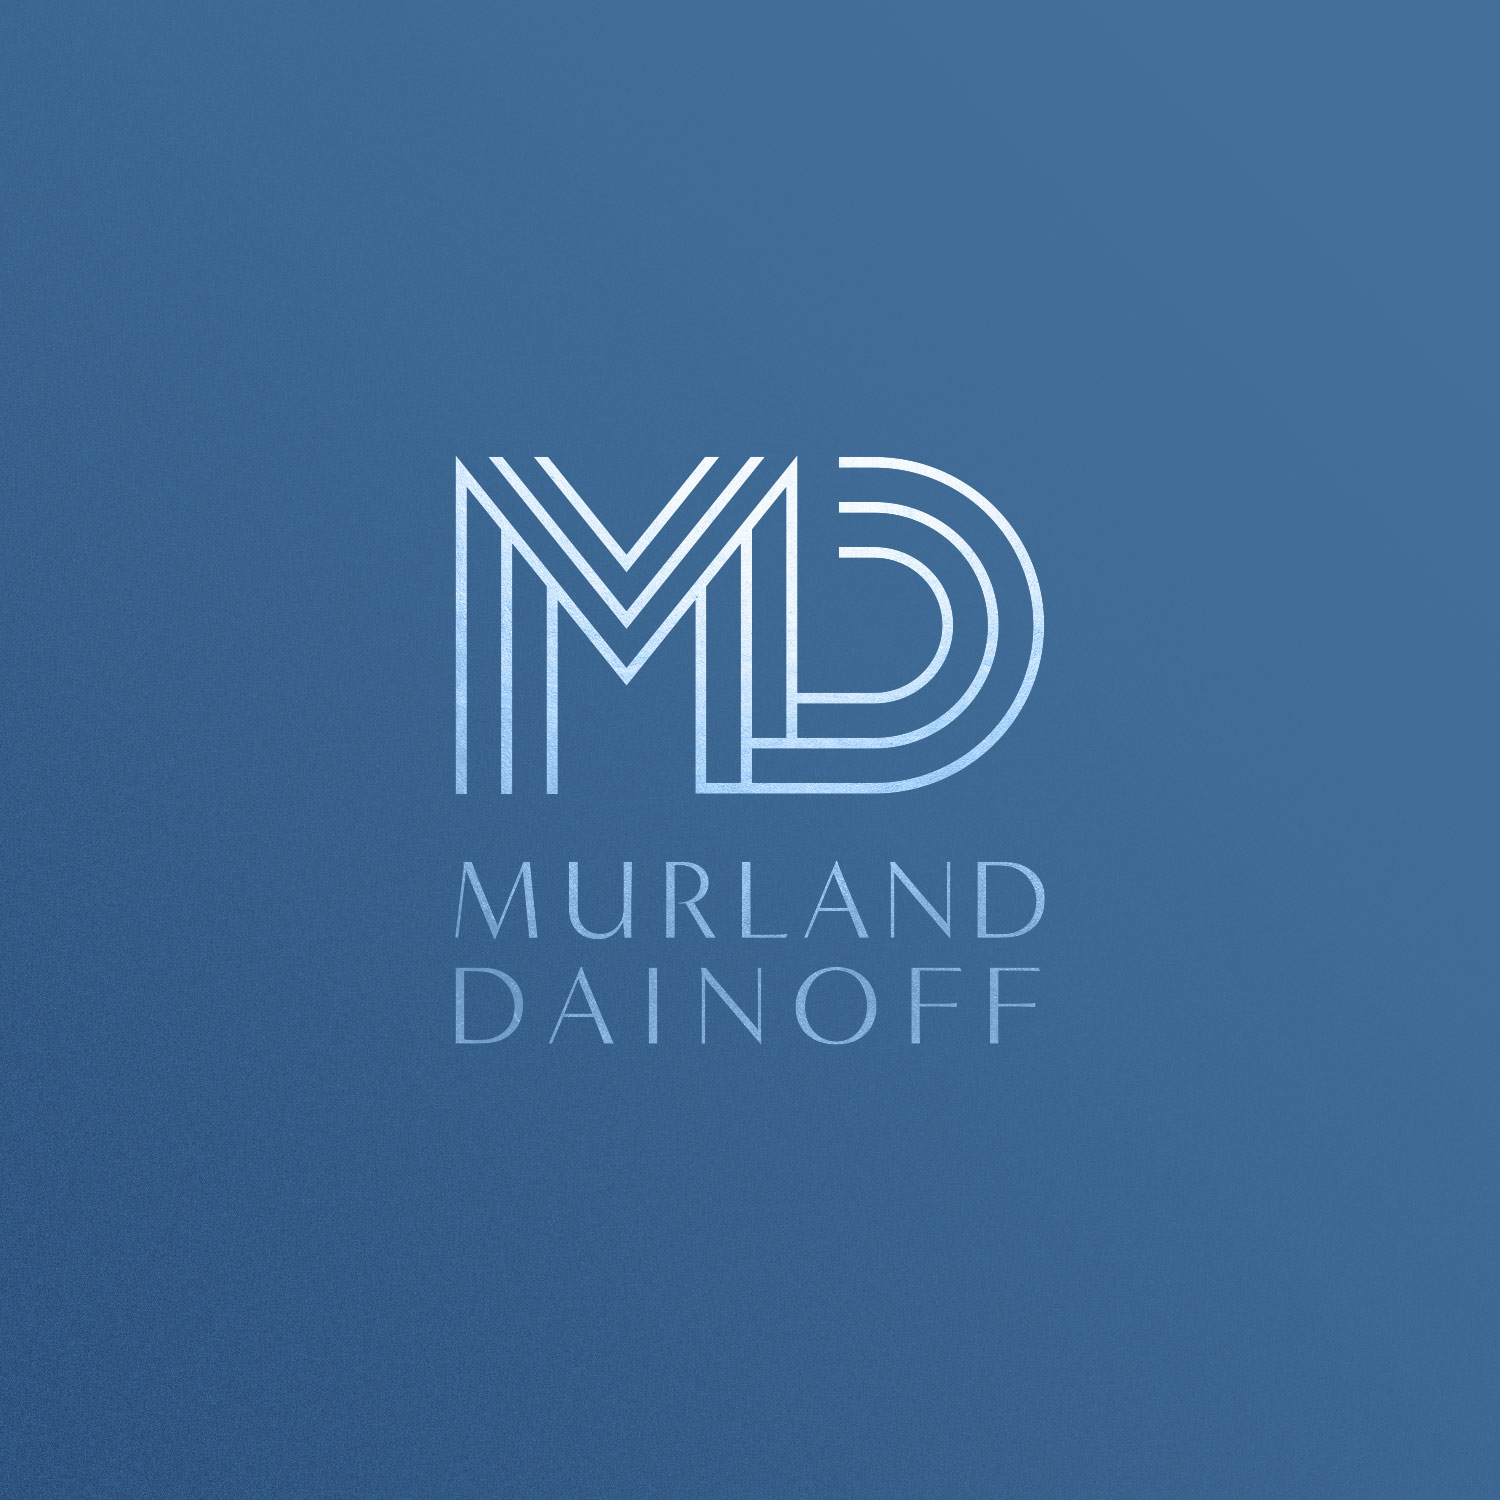 Murland Dainoff